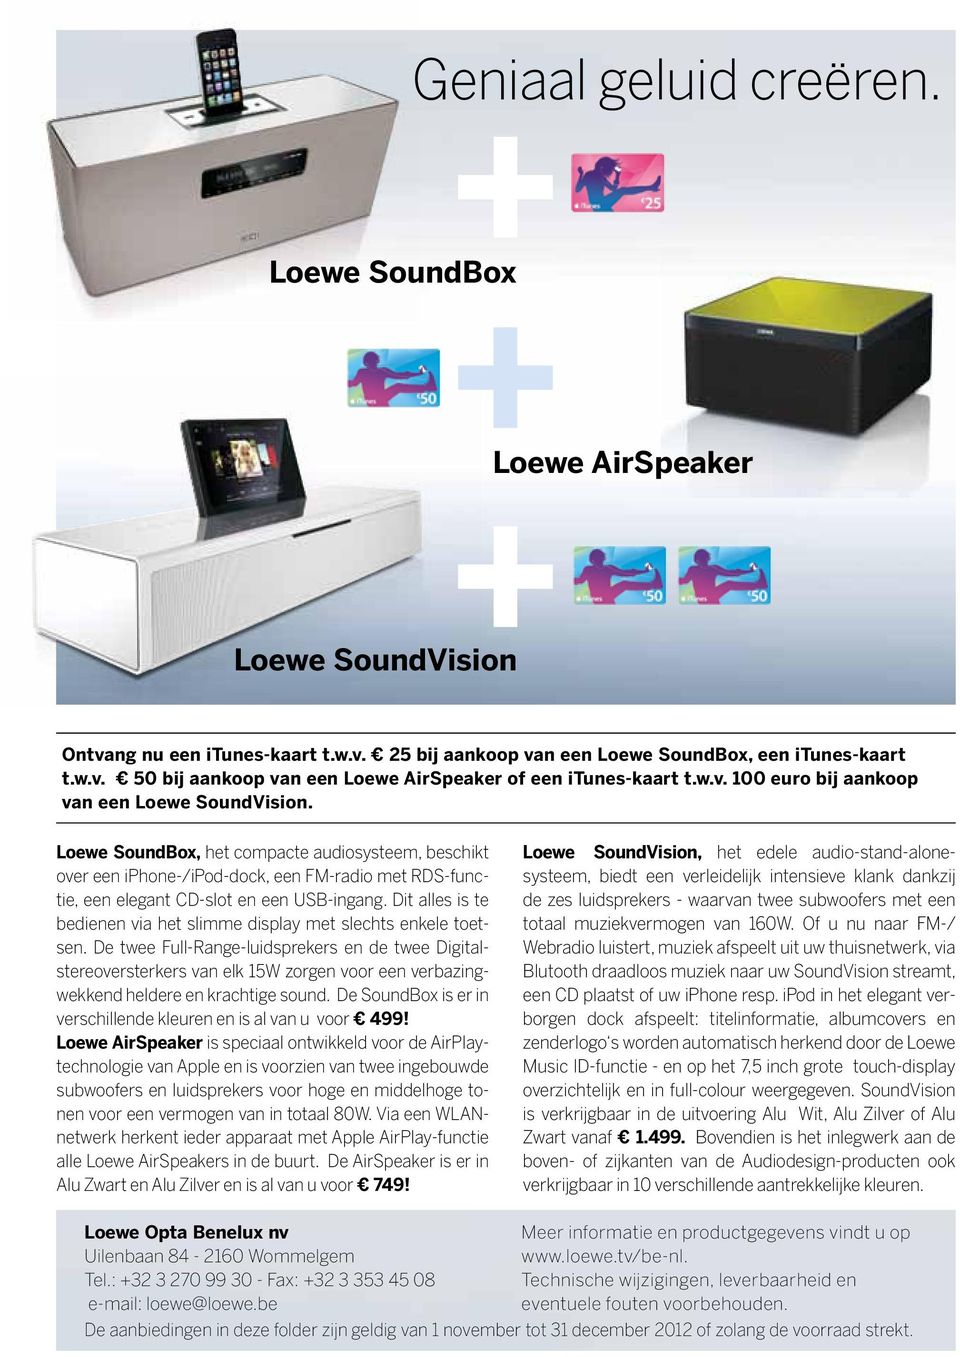 Loewe SoundBox, het compacte audiosysteem, beschikt over een iphone-/ipod-dock, een FM-radio met RDS-functie, een elegant CD-slot en een USB-ingang.